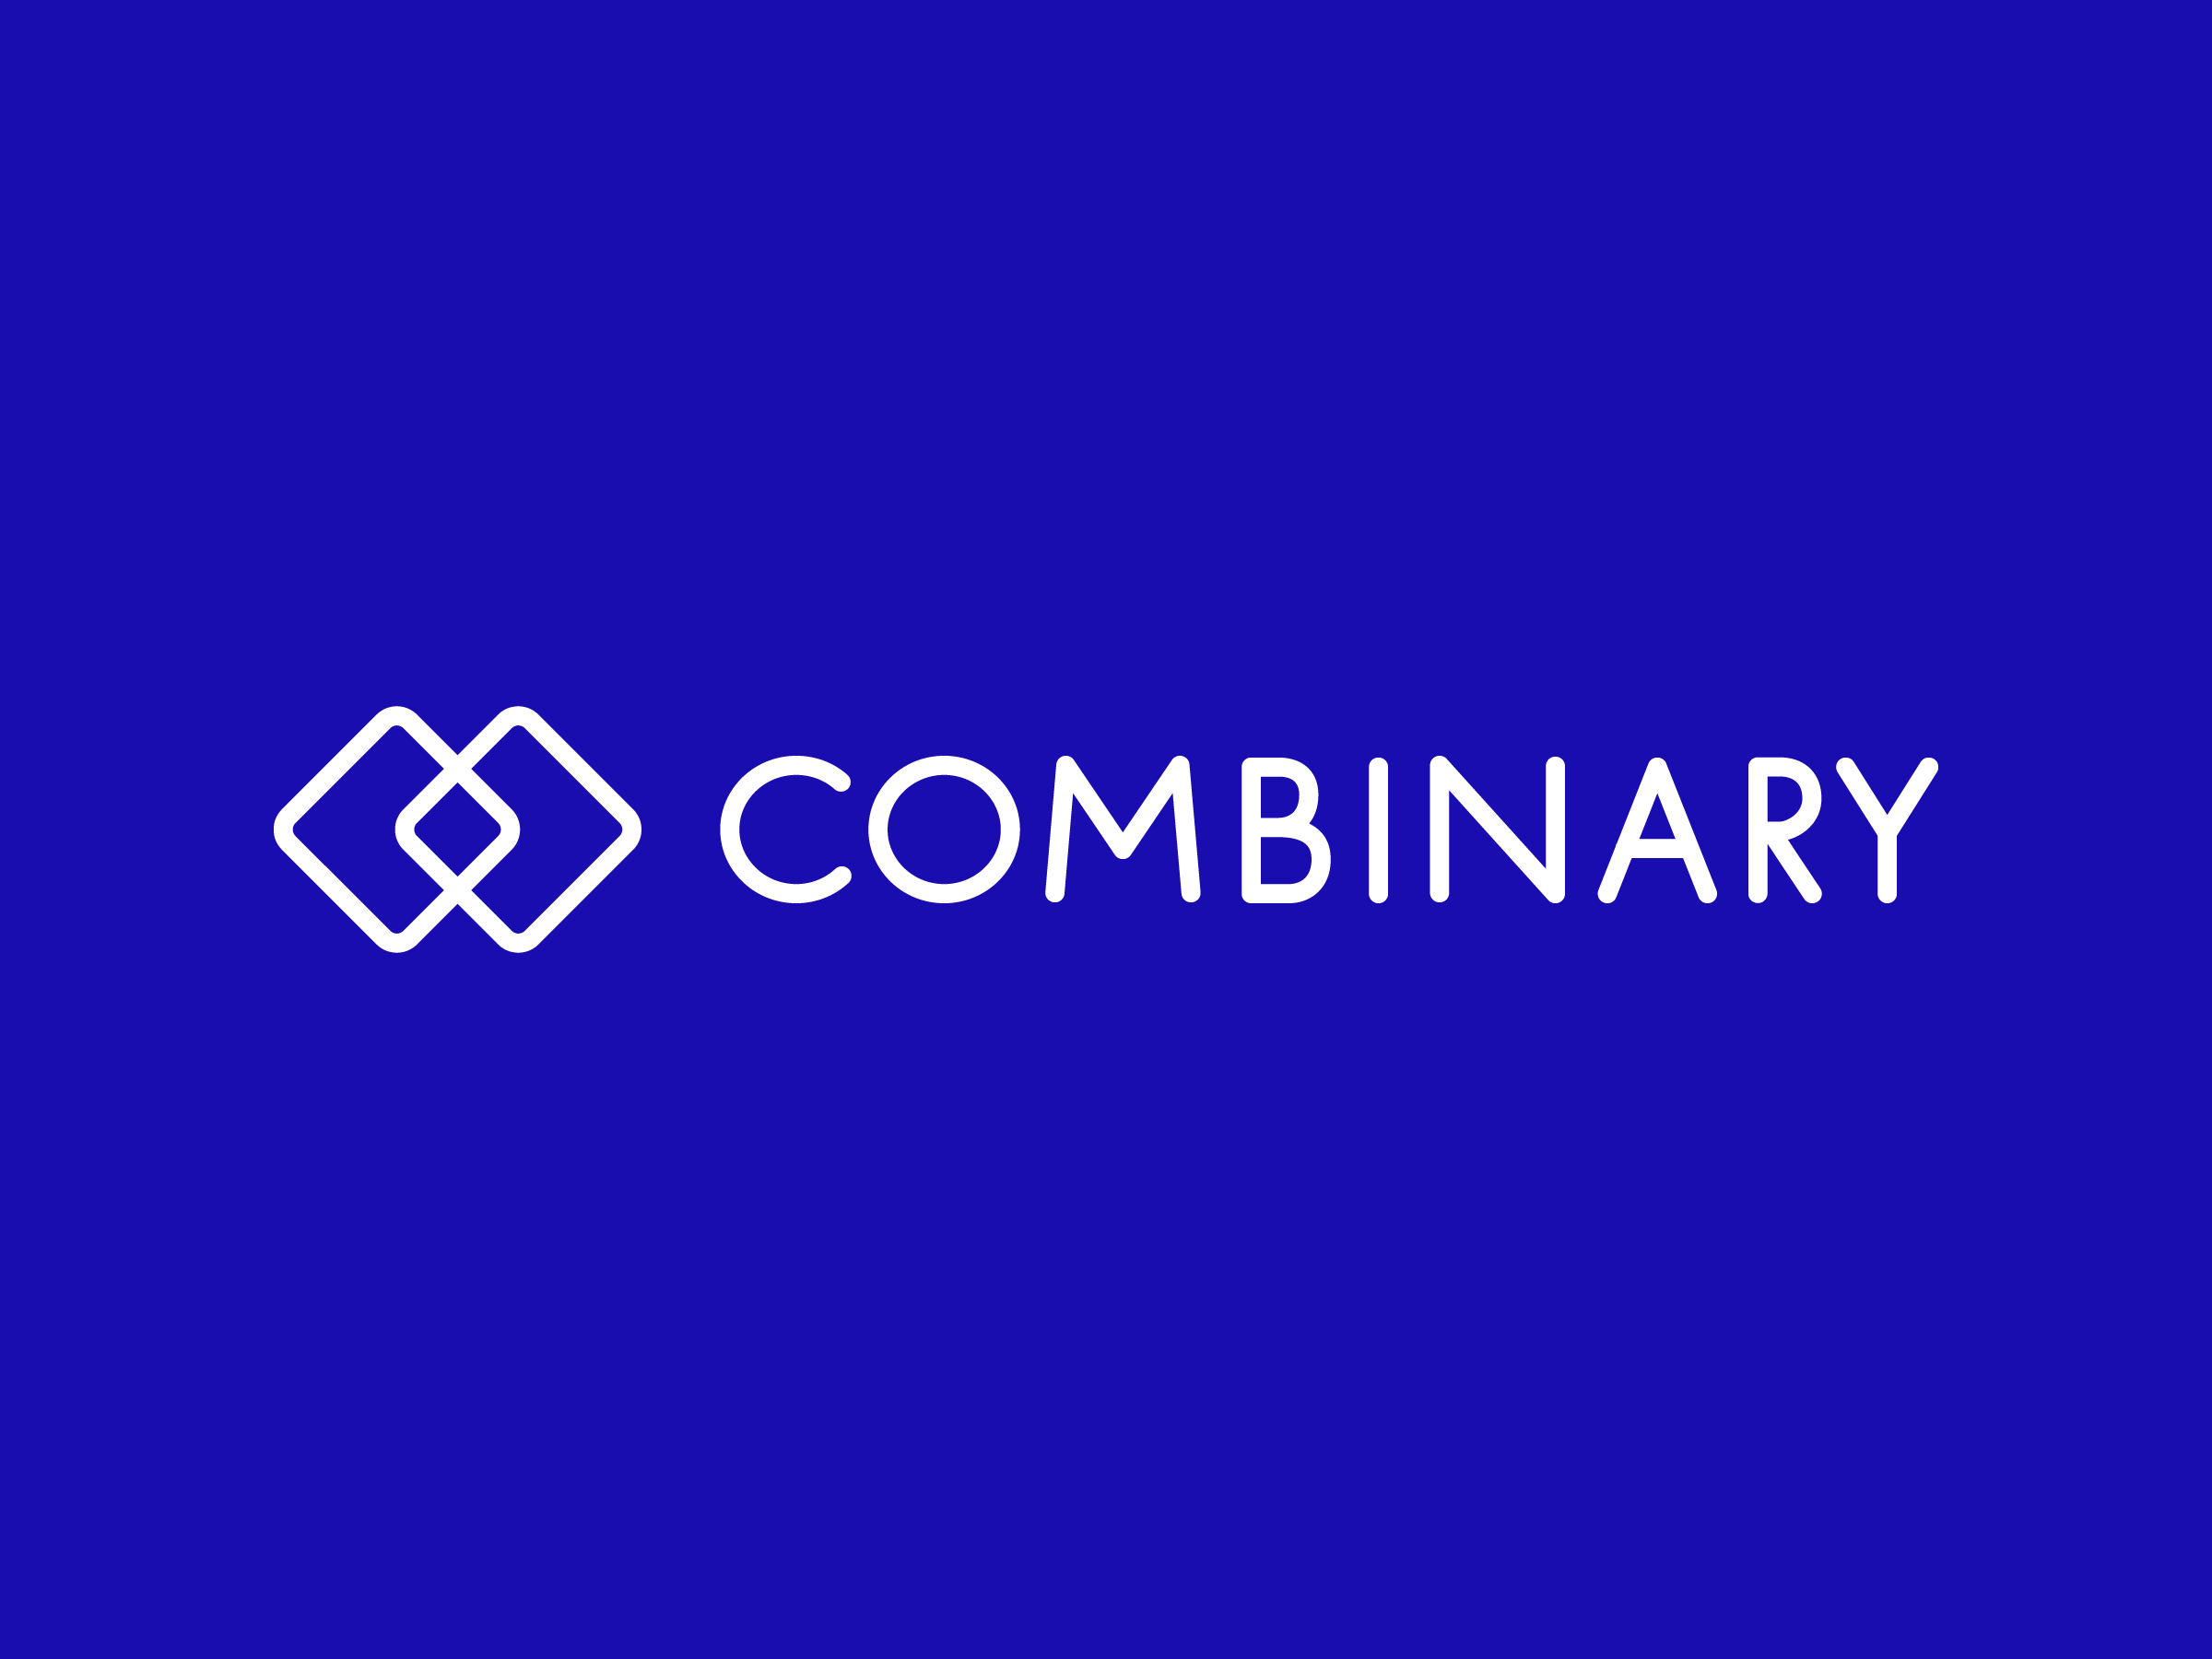 Logo Combinary